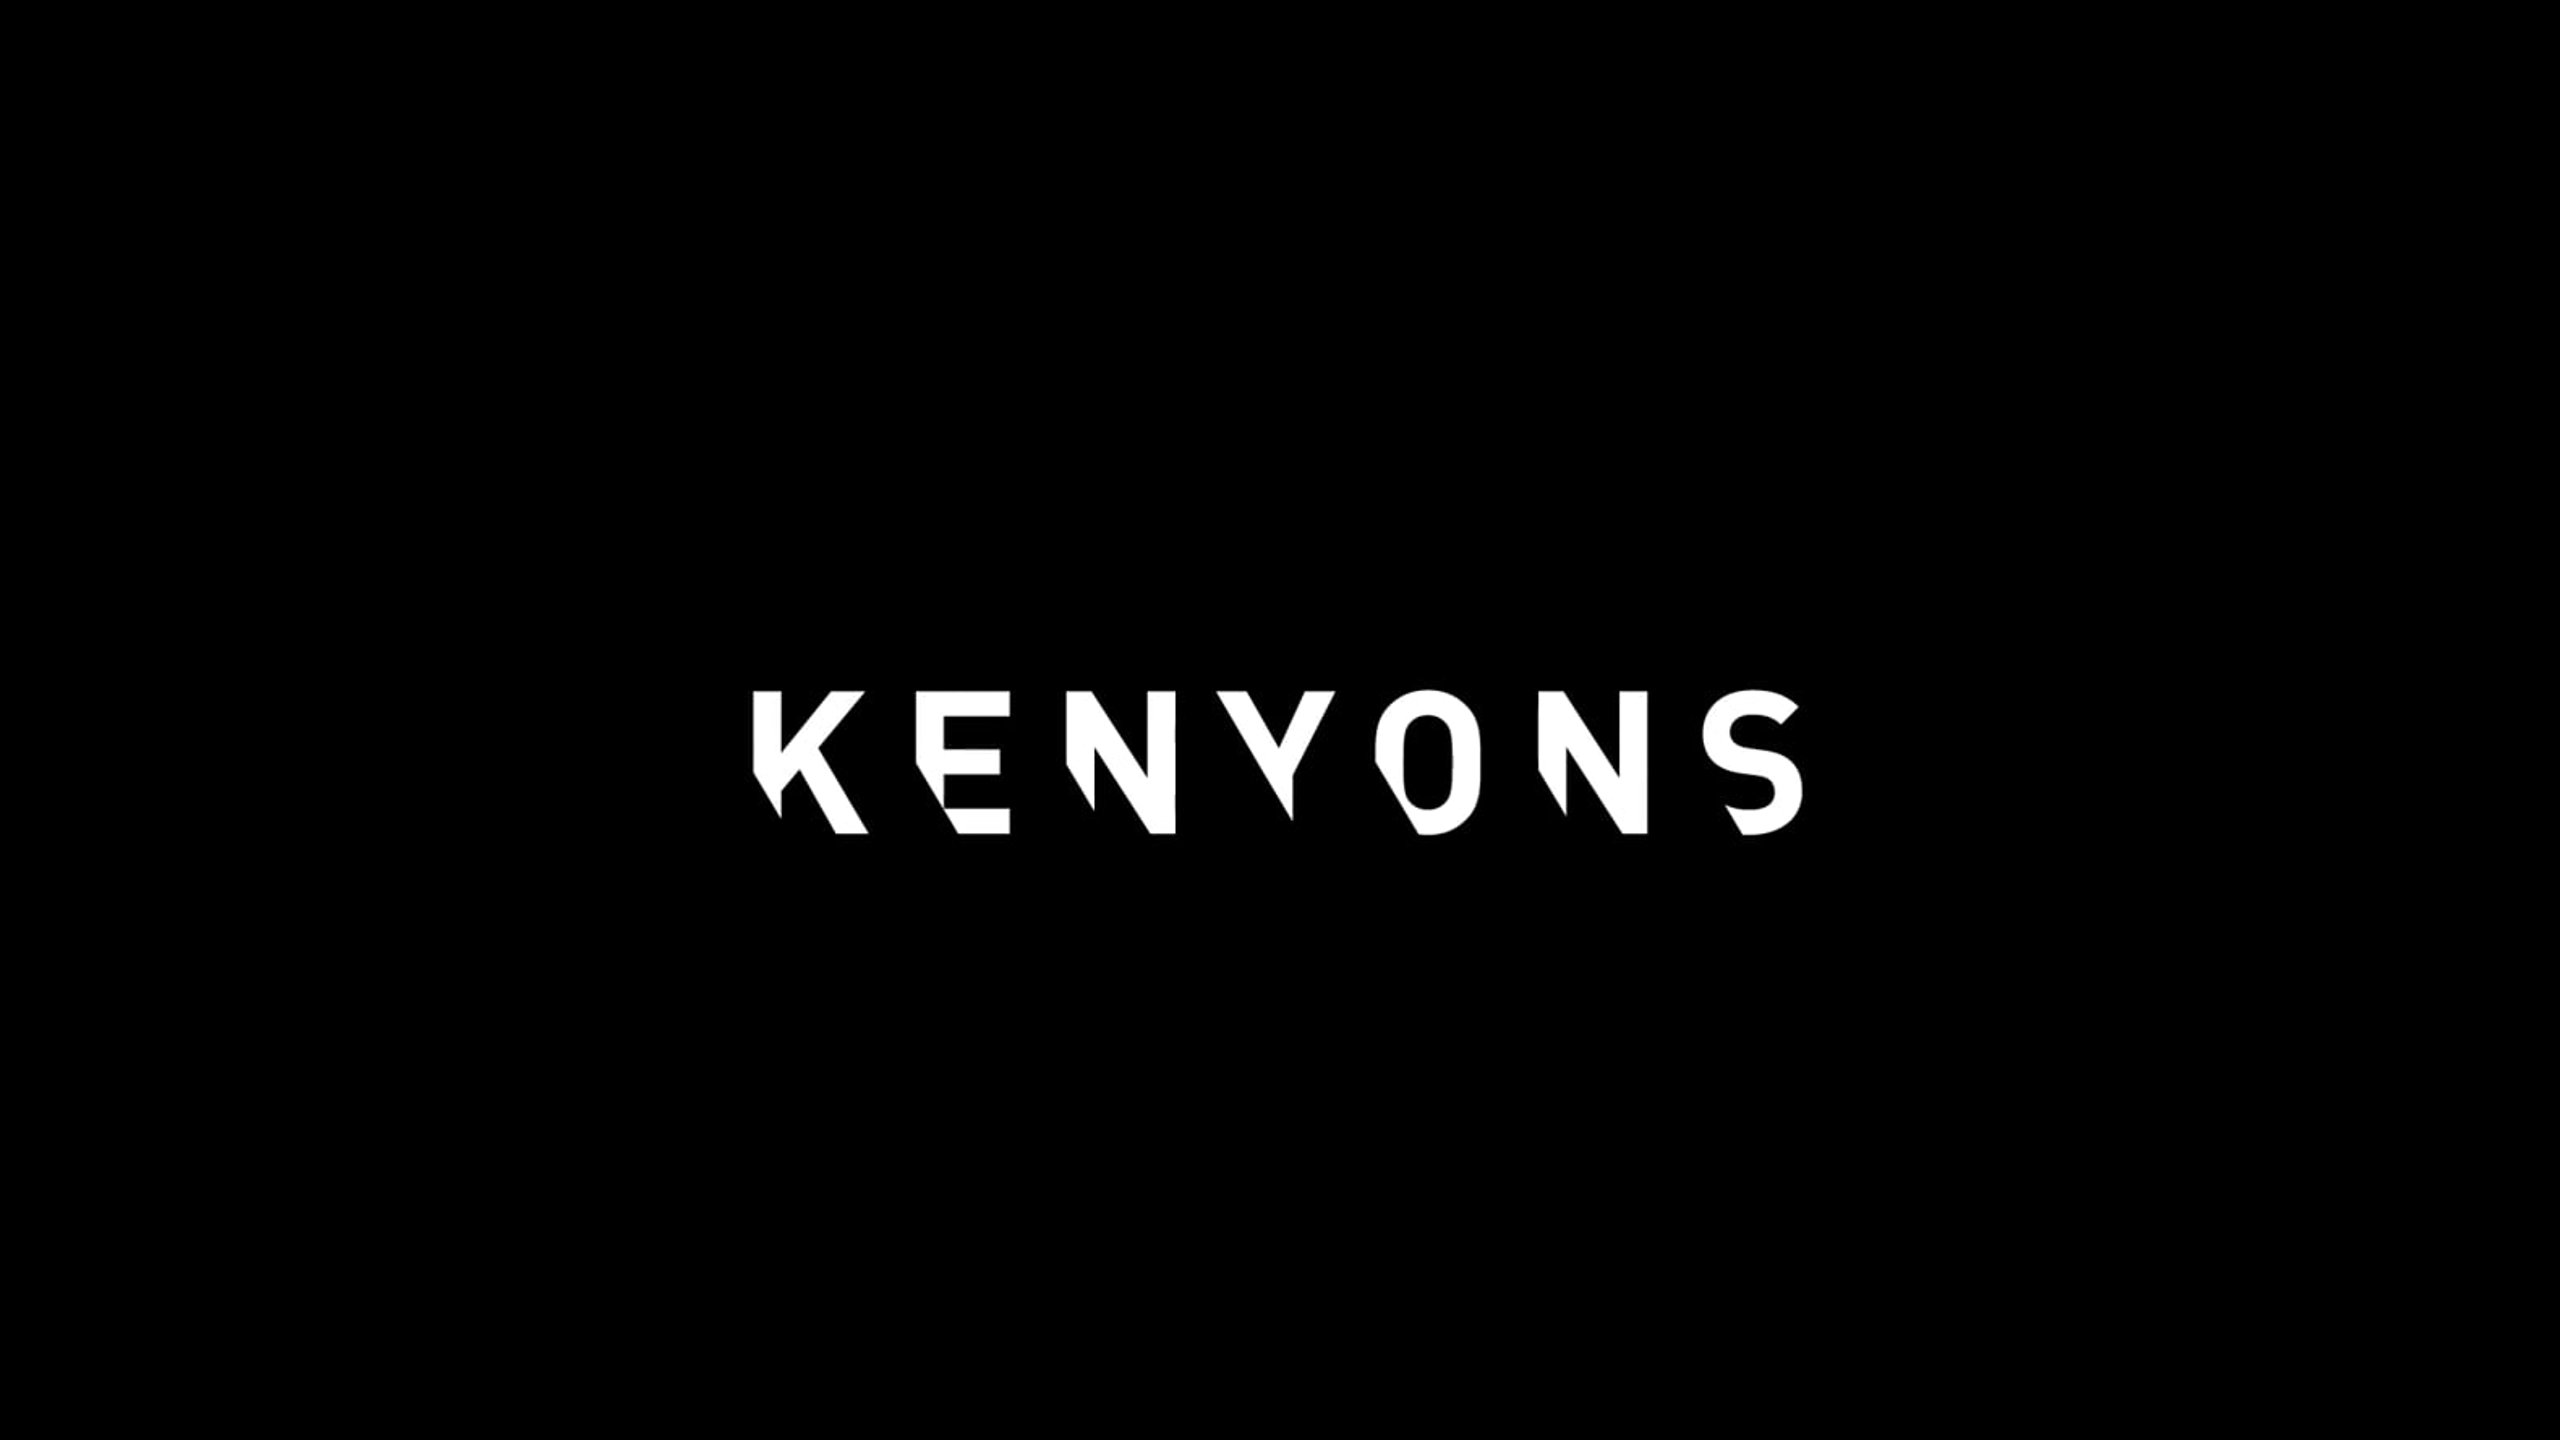 Kenyons Marketing logo 2020